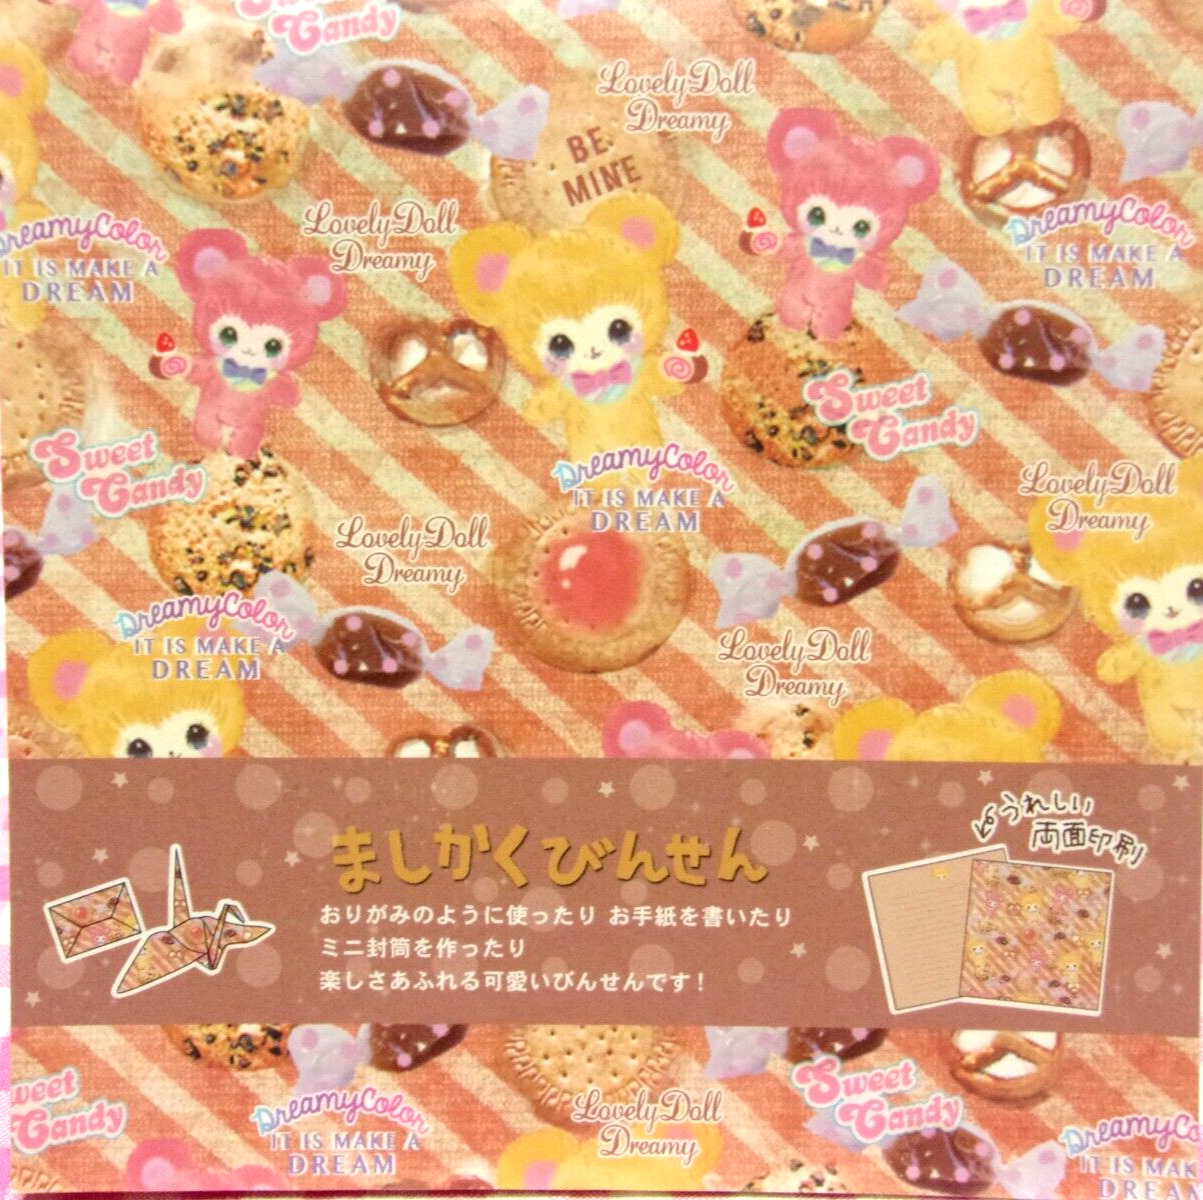 Lemon / Lovely Doll Dreamy Bear Square Letter Memo Pad / Japan Stationery